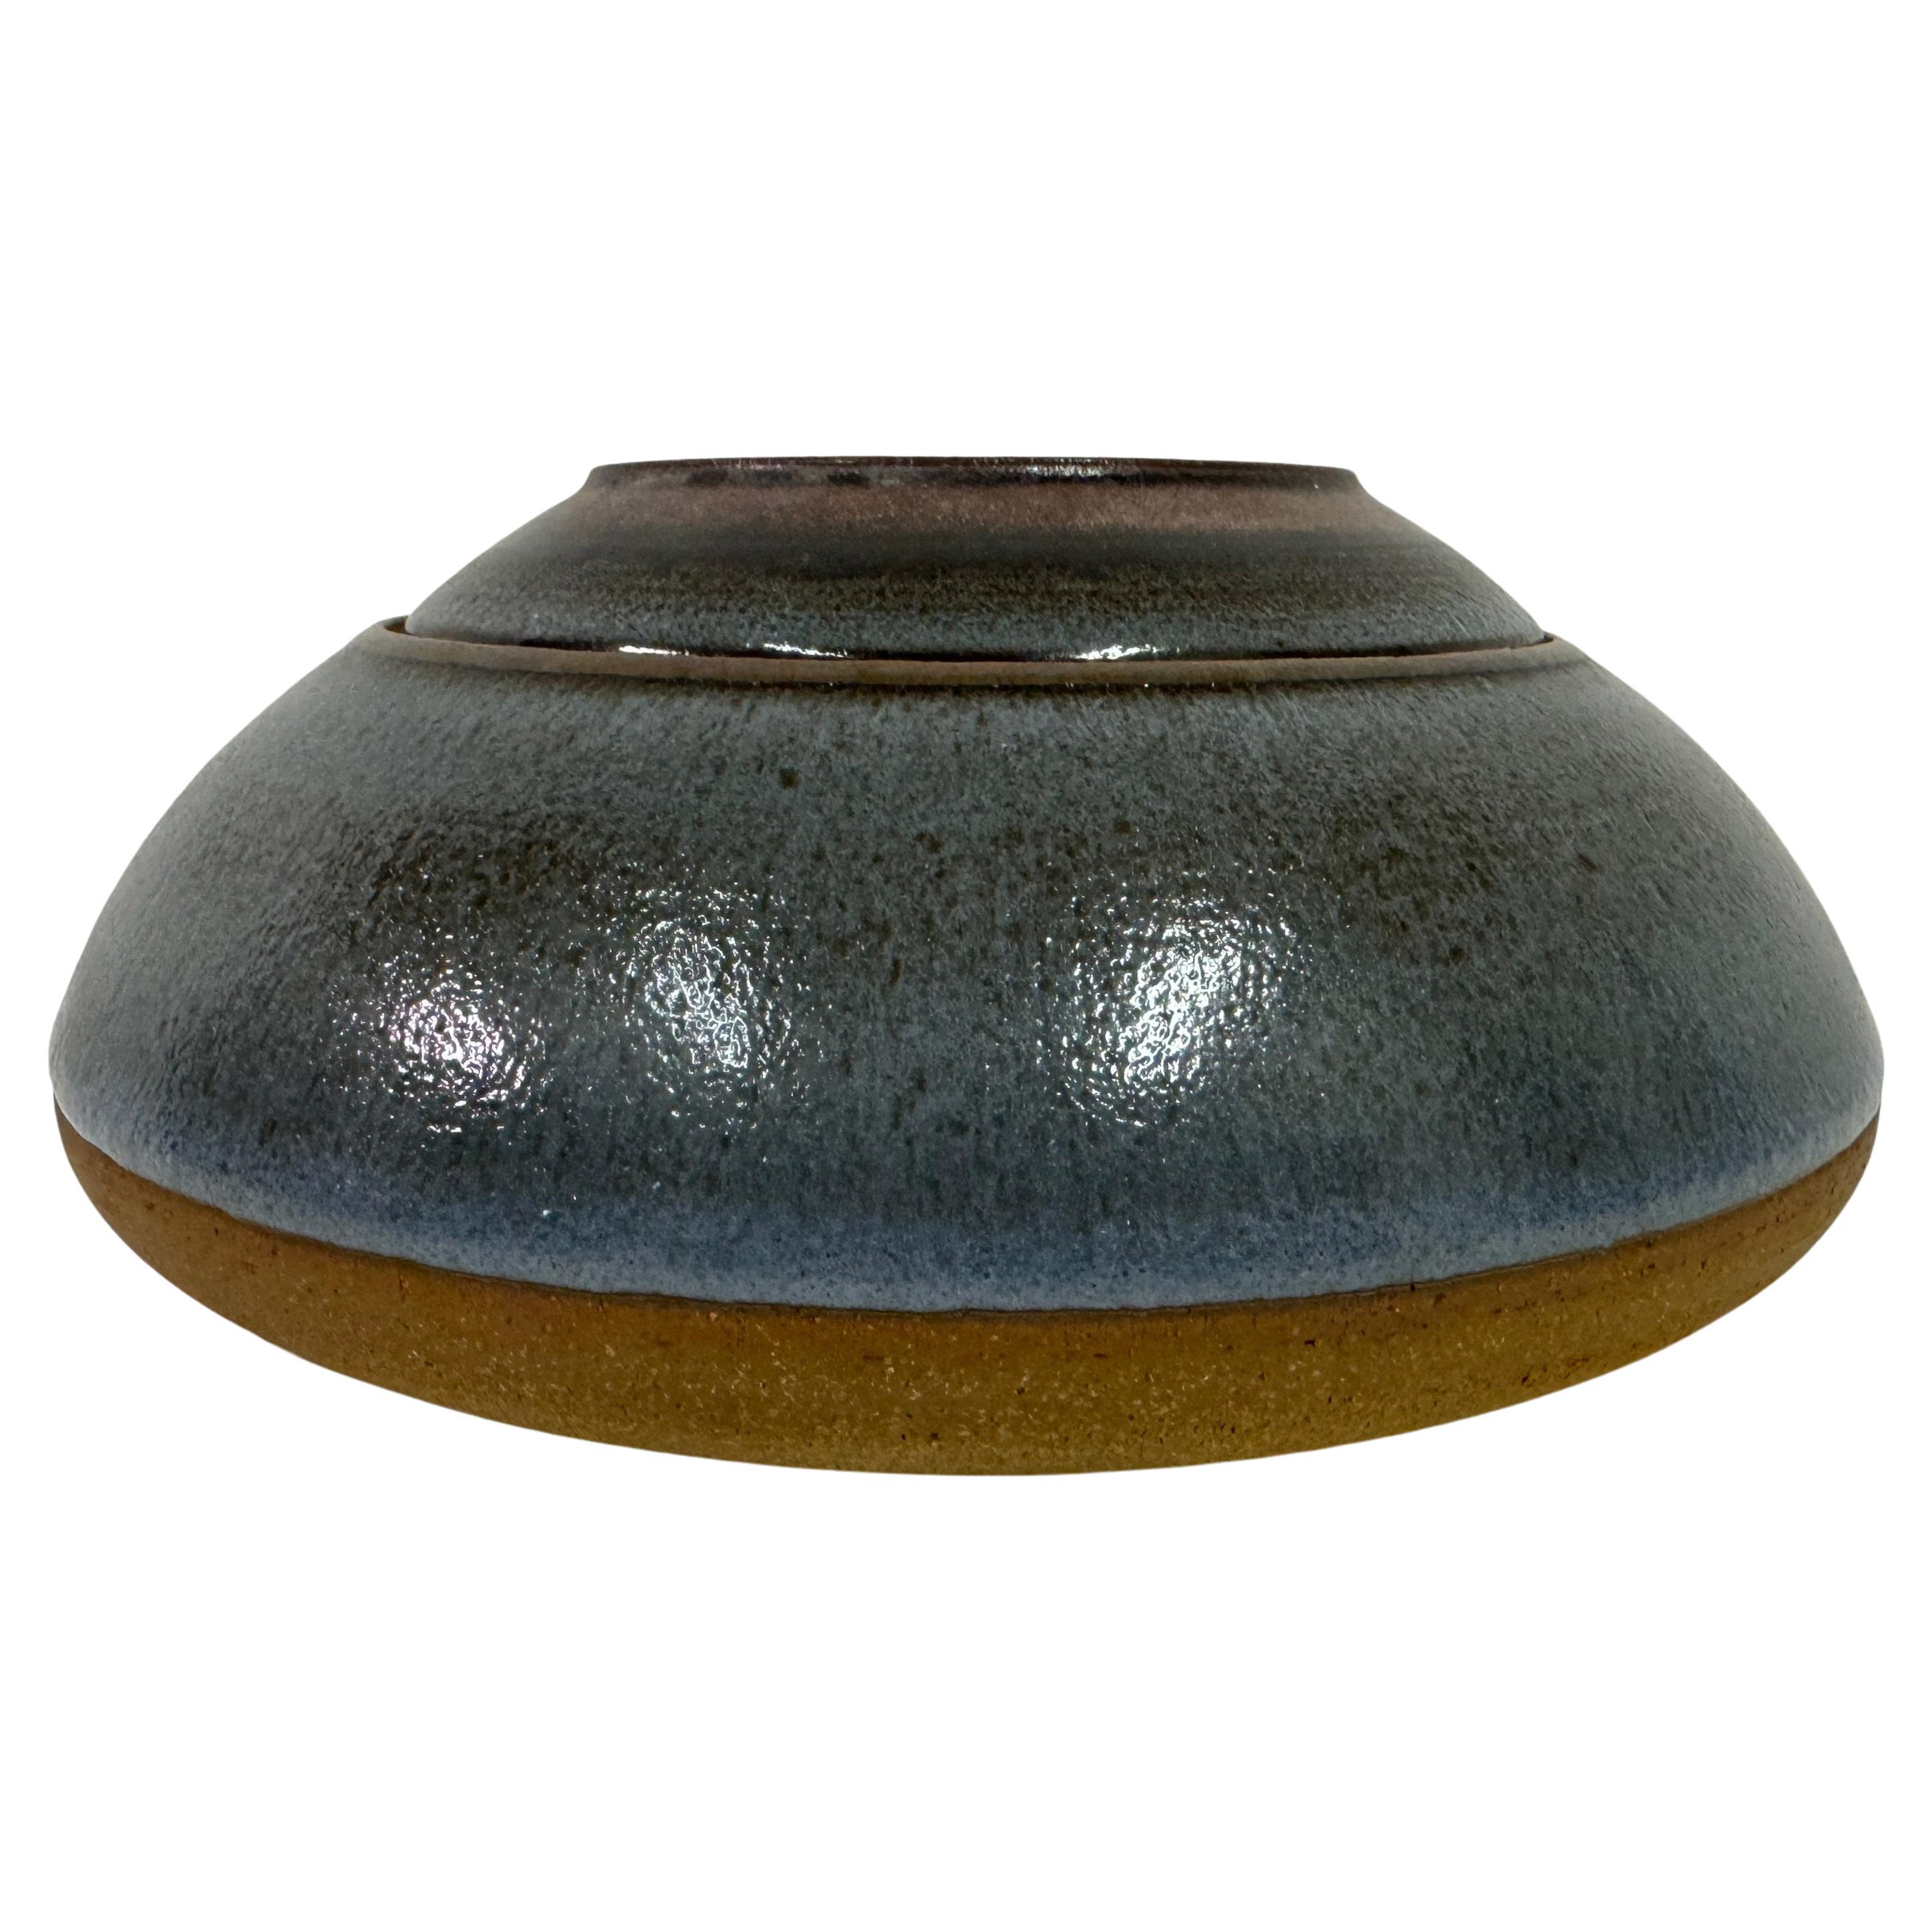 1960s Ceramic Pot and Dish by Nanni Valentini for Ceramica Arcore